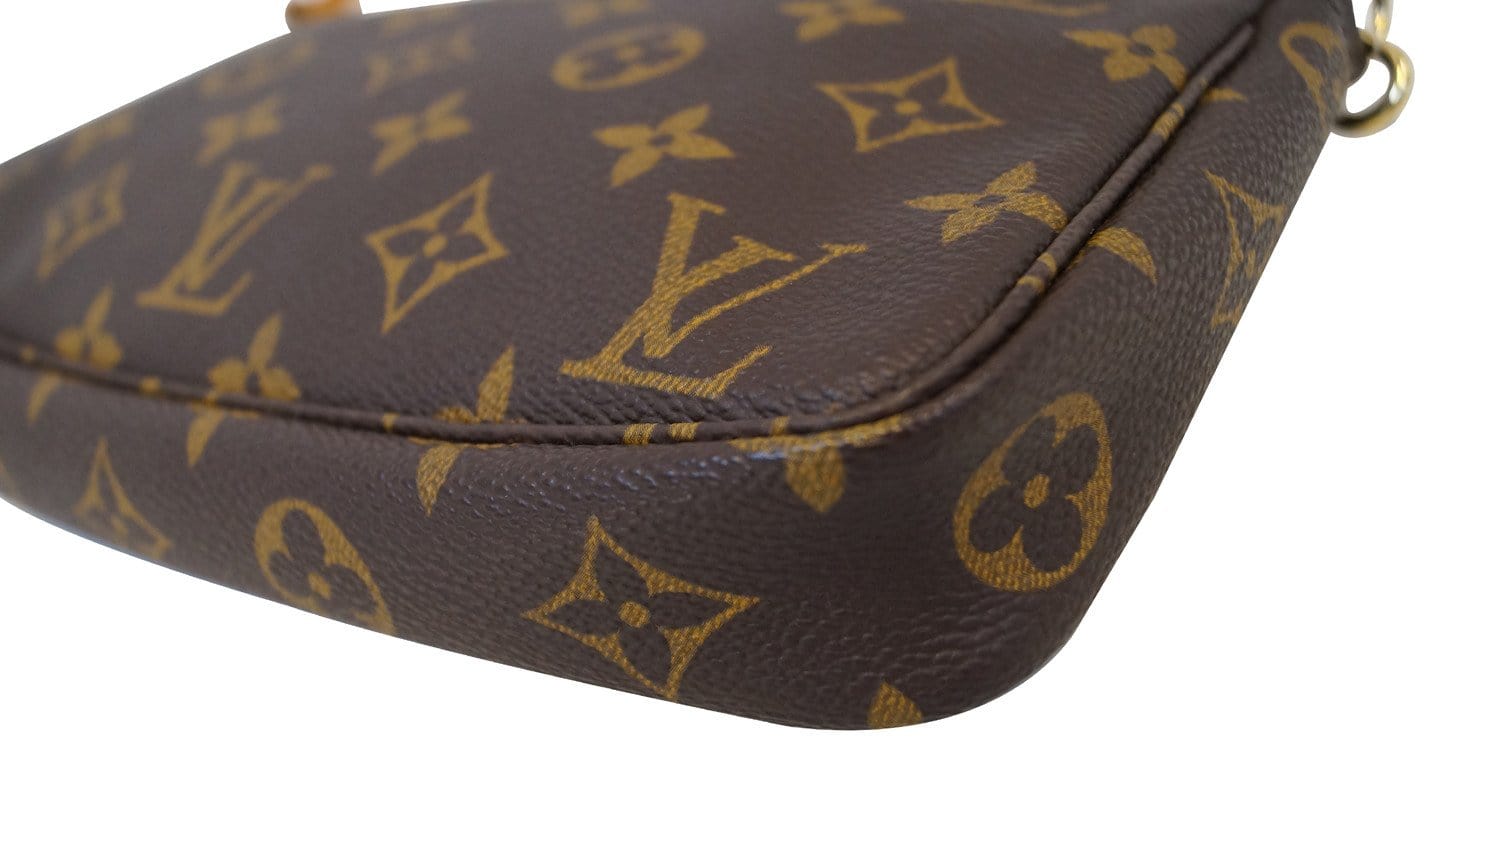 🔥NEW LOUIS VUITTON Large Pochette Accessories Monogram Pouch Bag